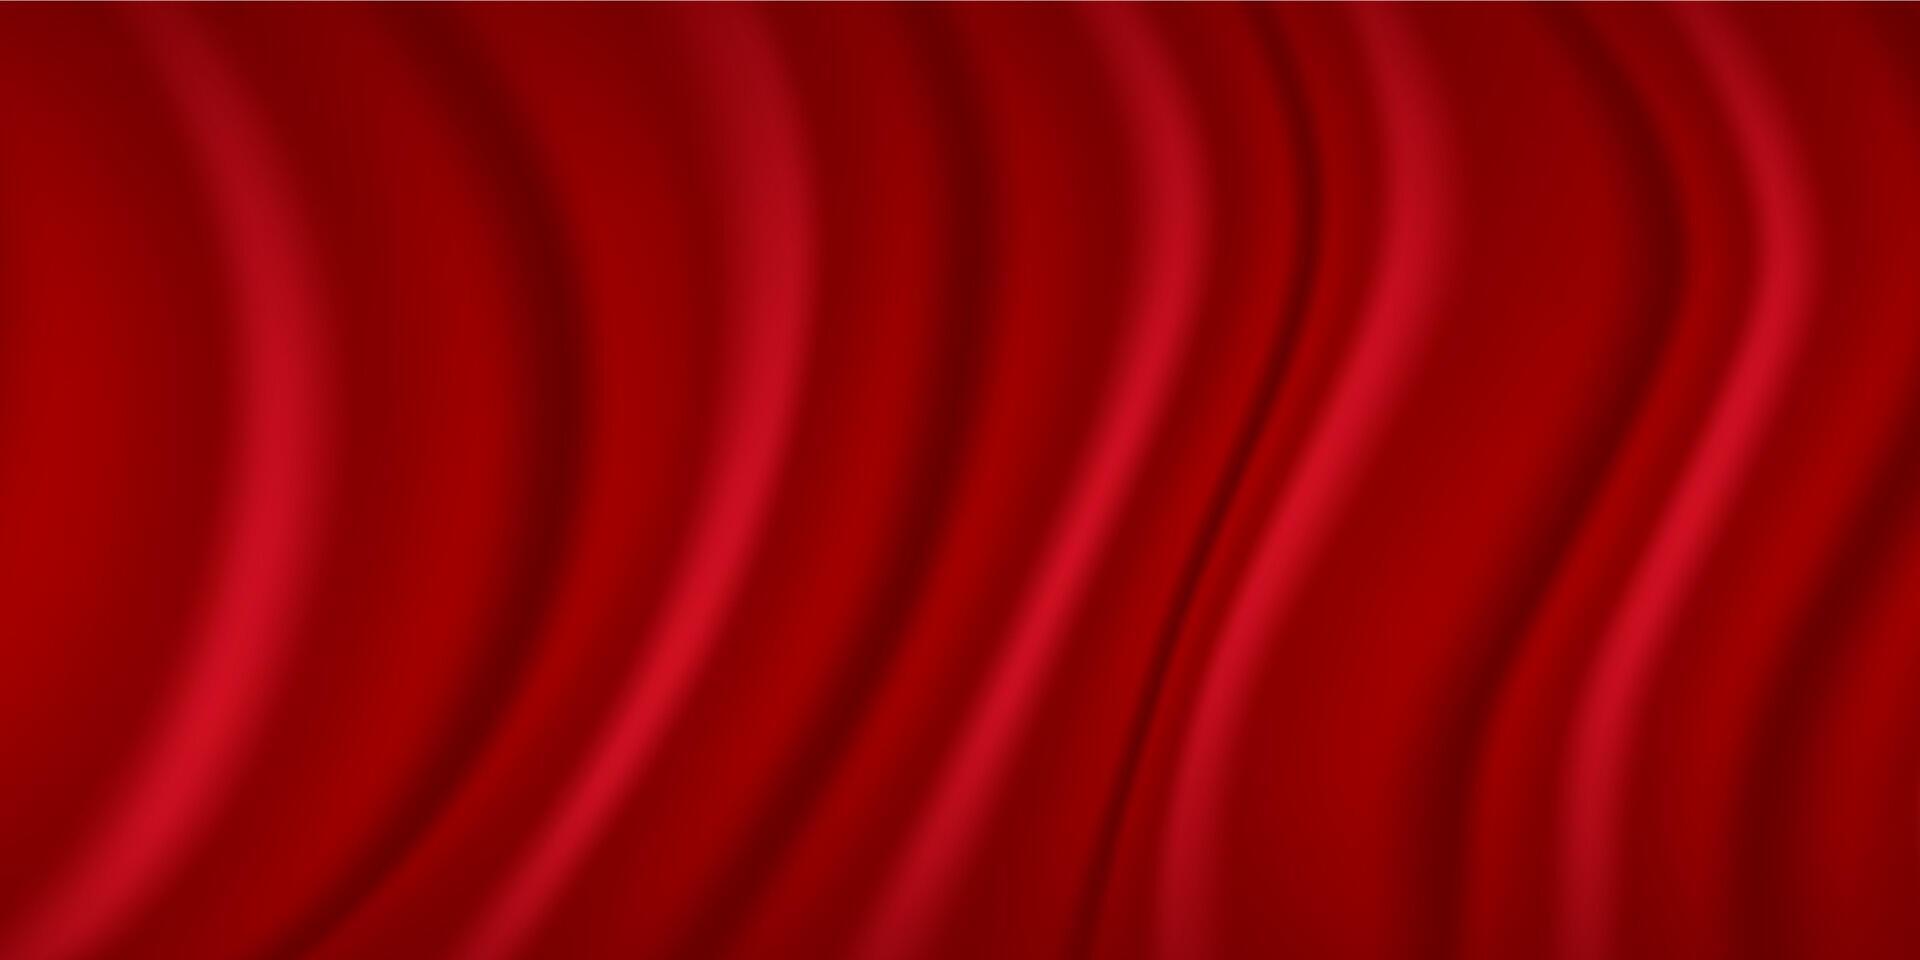 3d Illustration von rot Vorhänge Seide Stoff Luxus Hintergrund. 3d Seide Textur Tuch. vektor